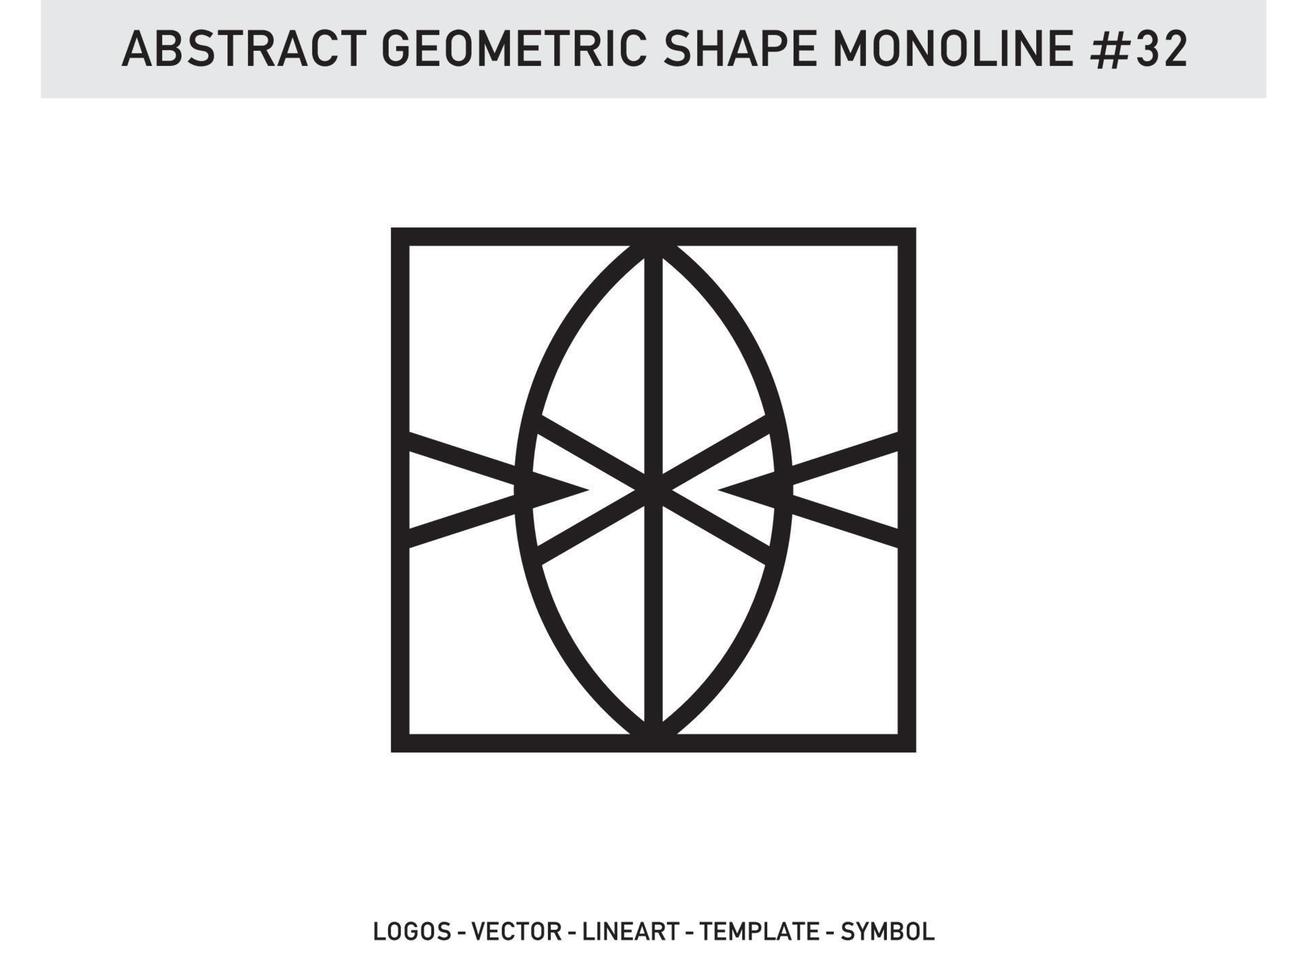 vector de diseño geométrico abstracto monoline gratis